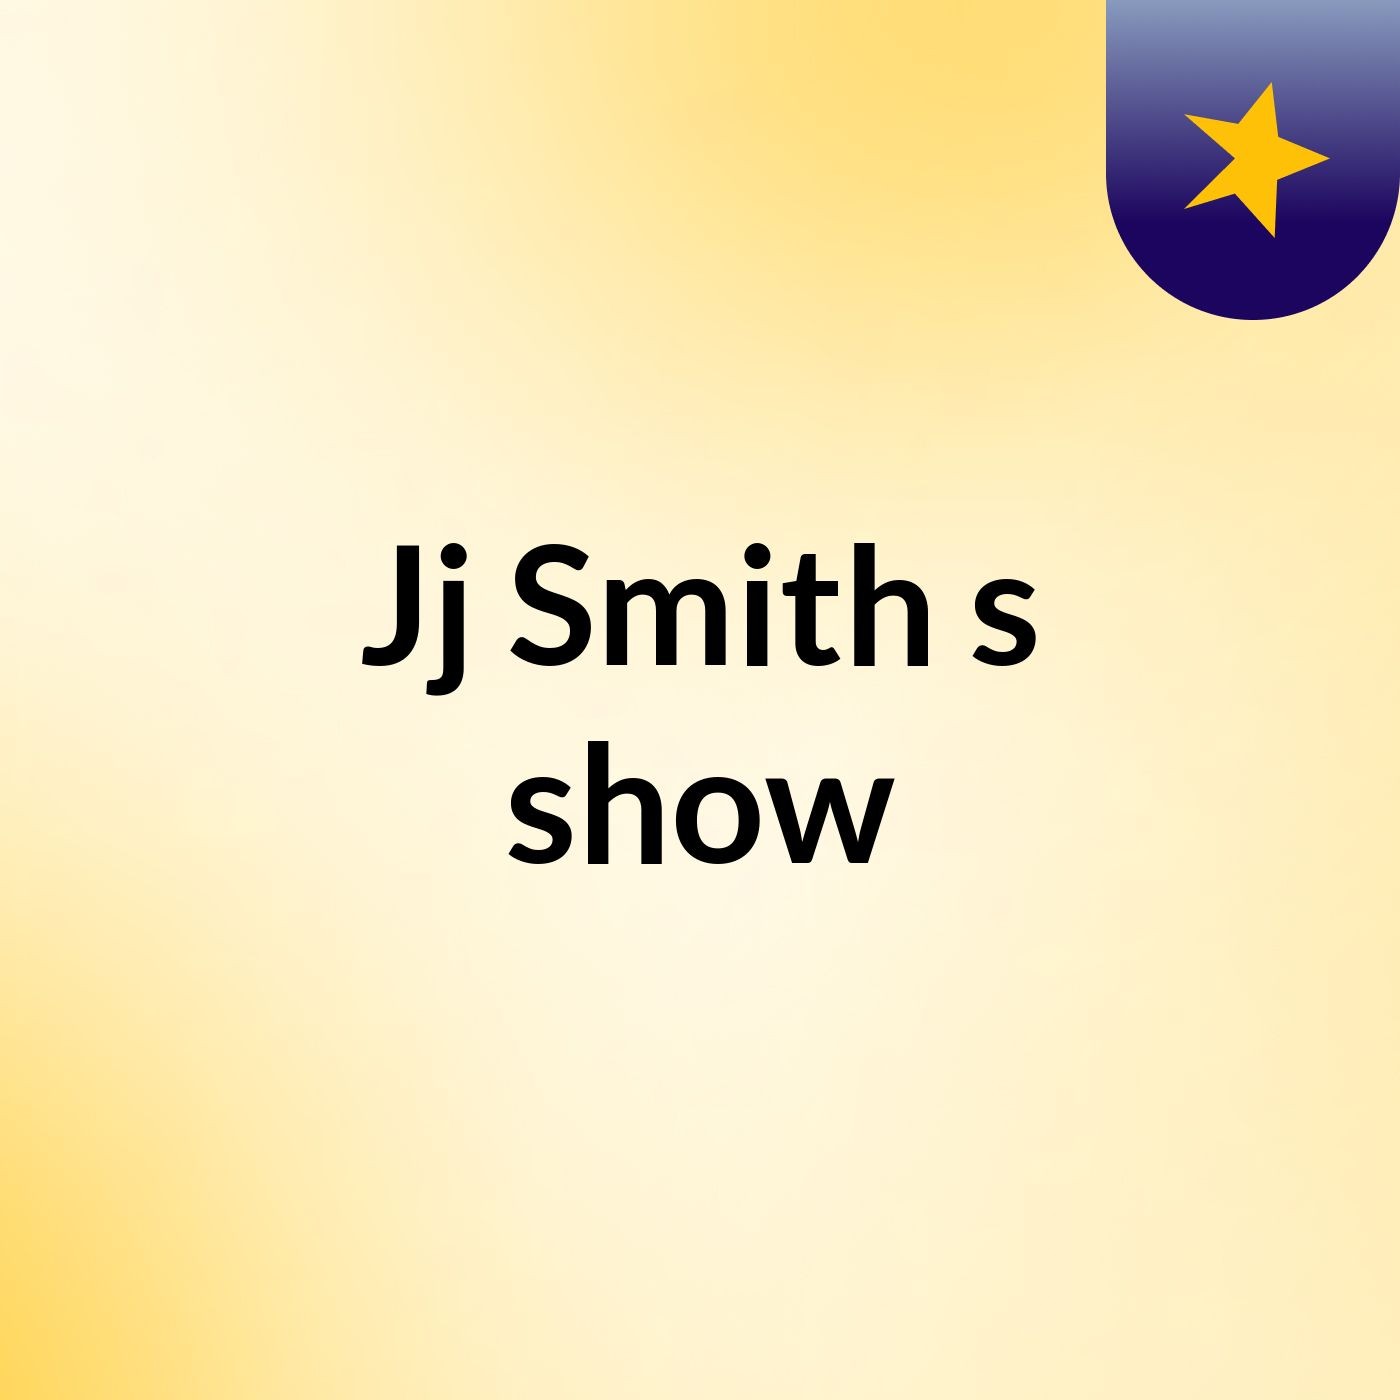 Jj Smith's show